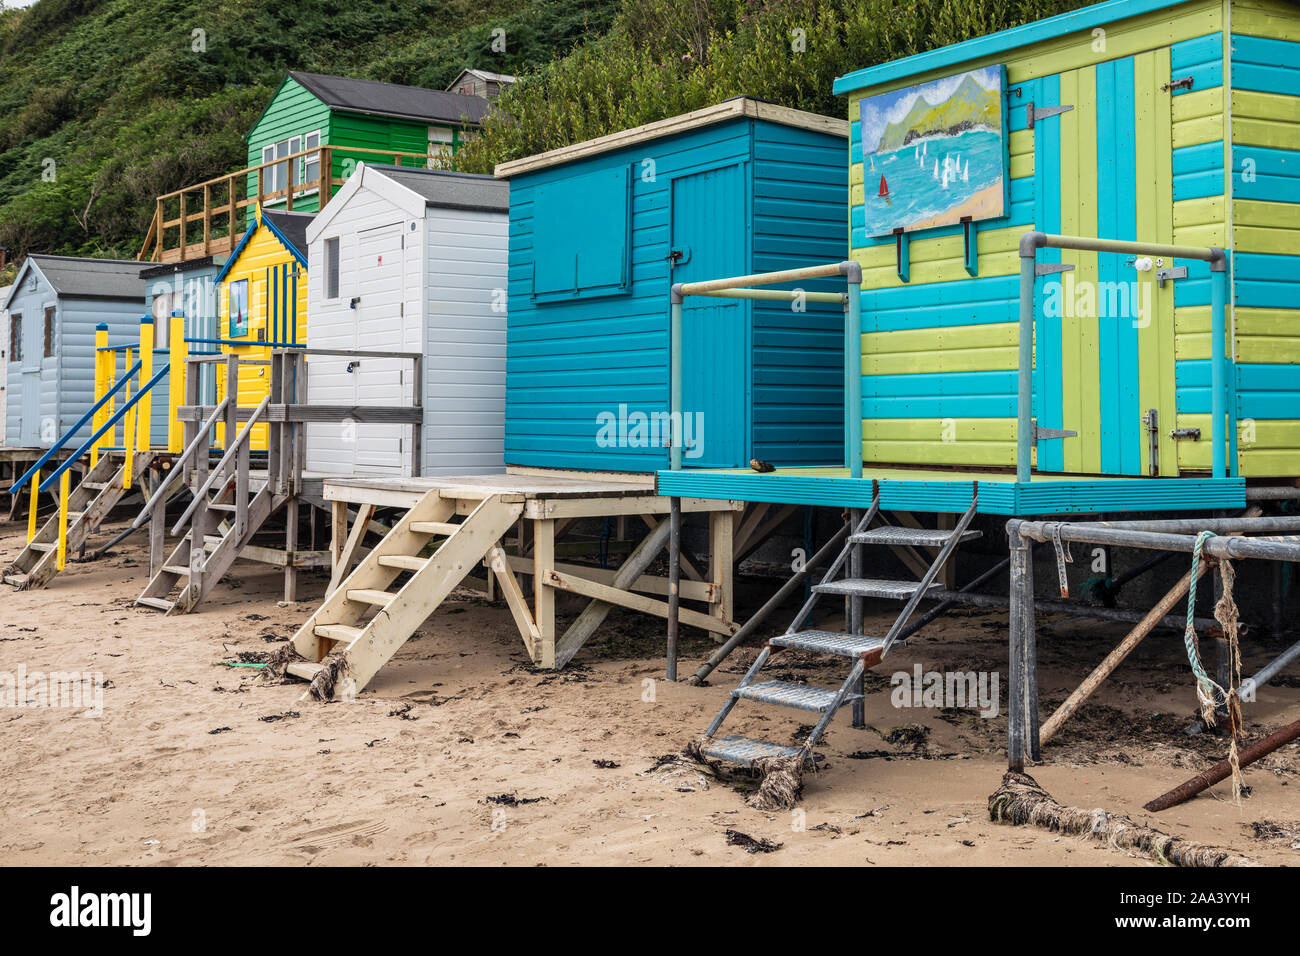 Colourful beach huts on the beach at Nefyn, Llŷn Peninsula, Gwynedd, Wales Stock Photo